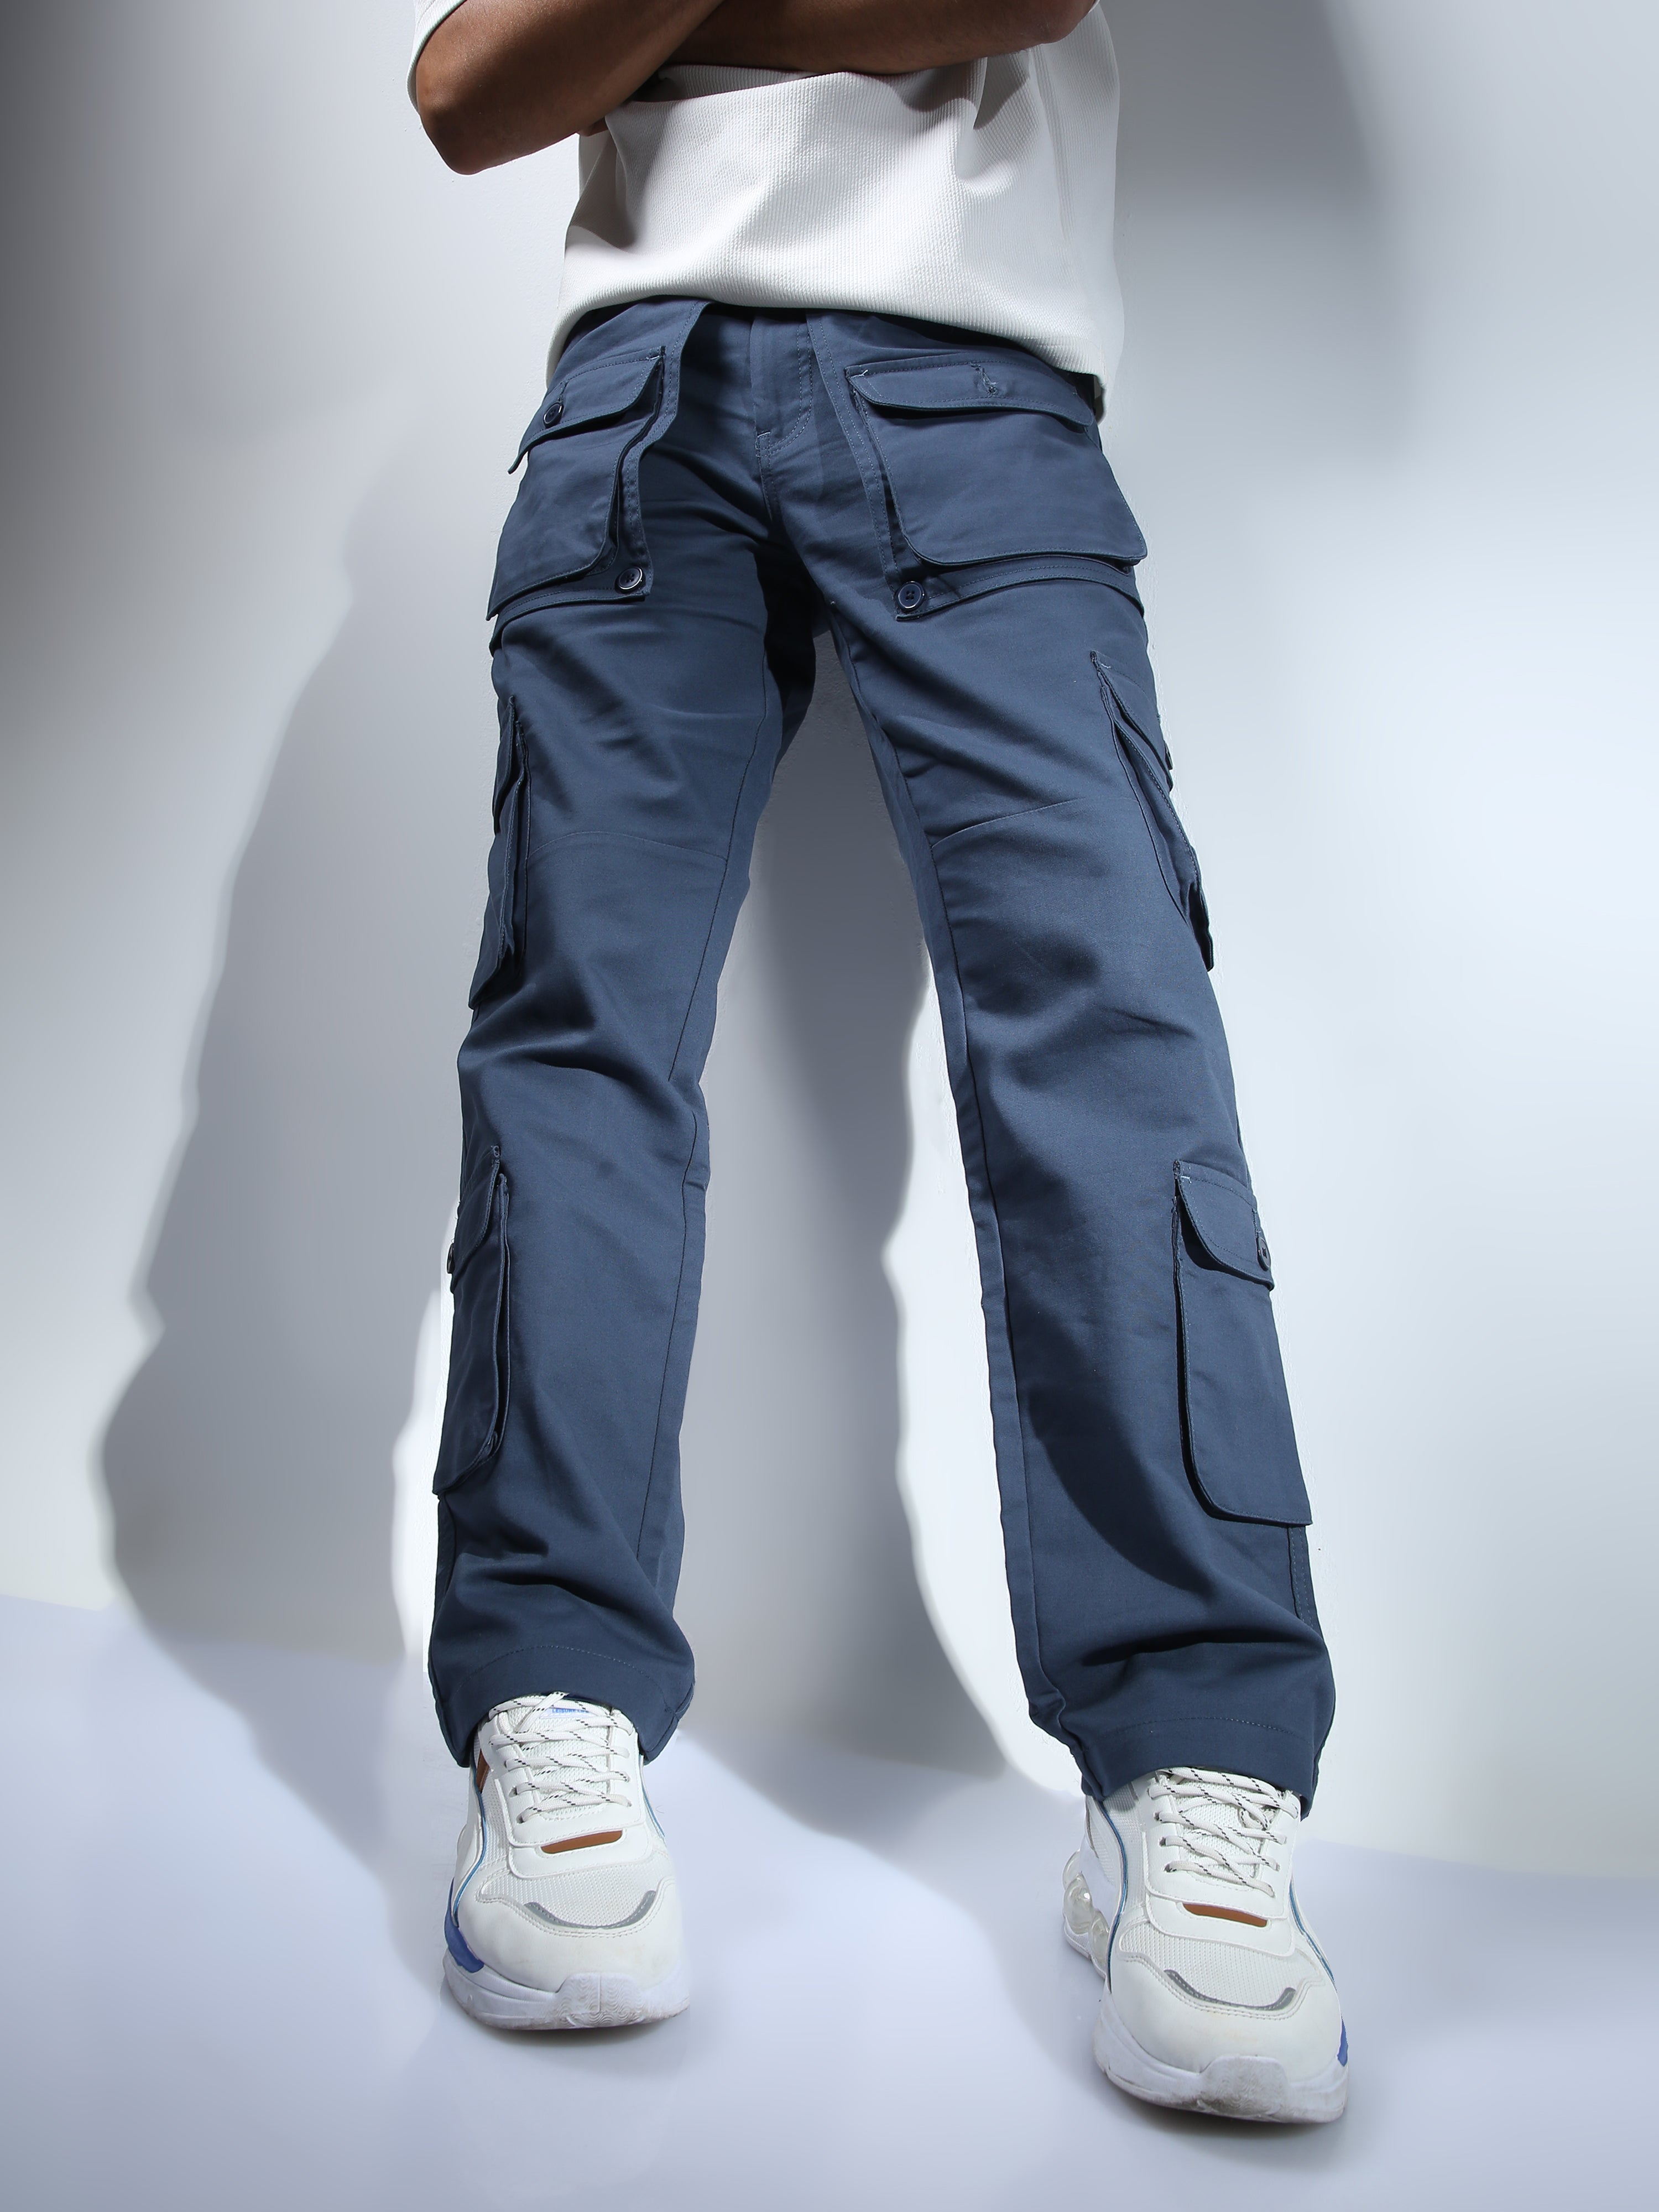 Men's Cargo Pants - Buy Men's Cargo Pants Online | Wildcraft